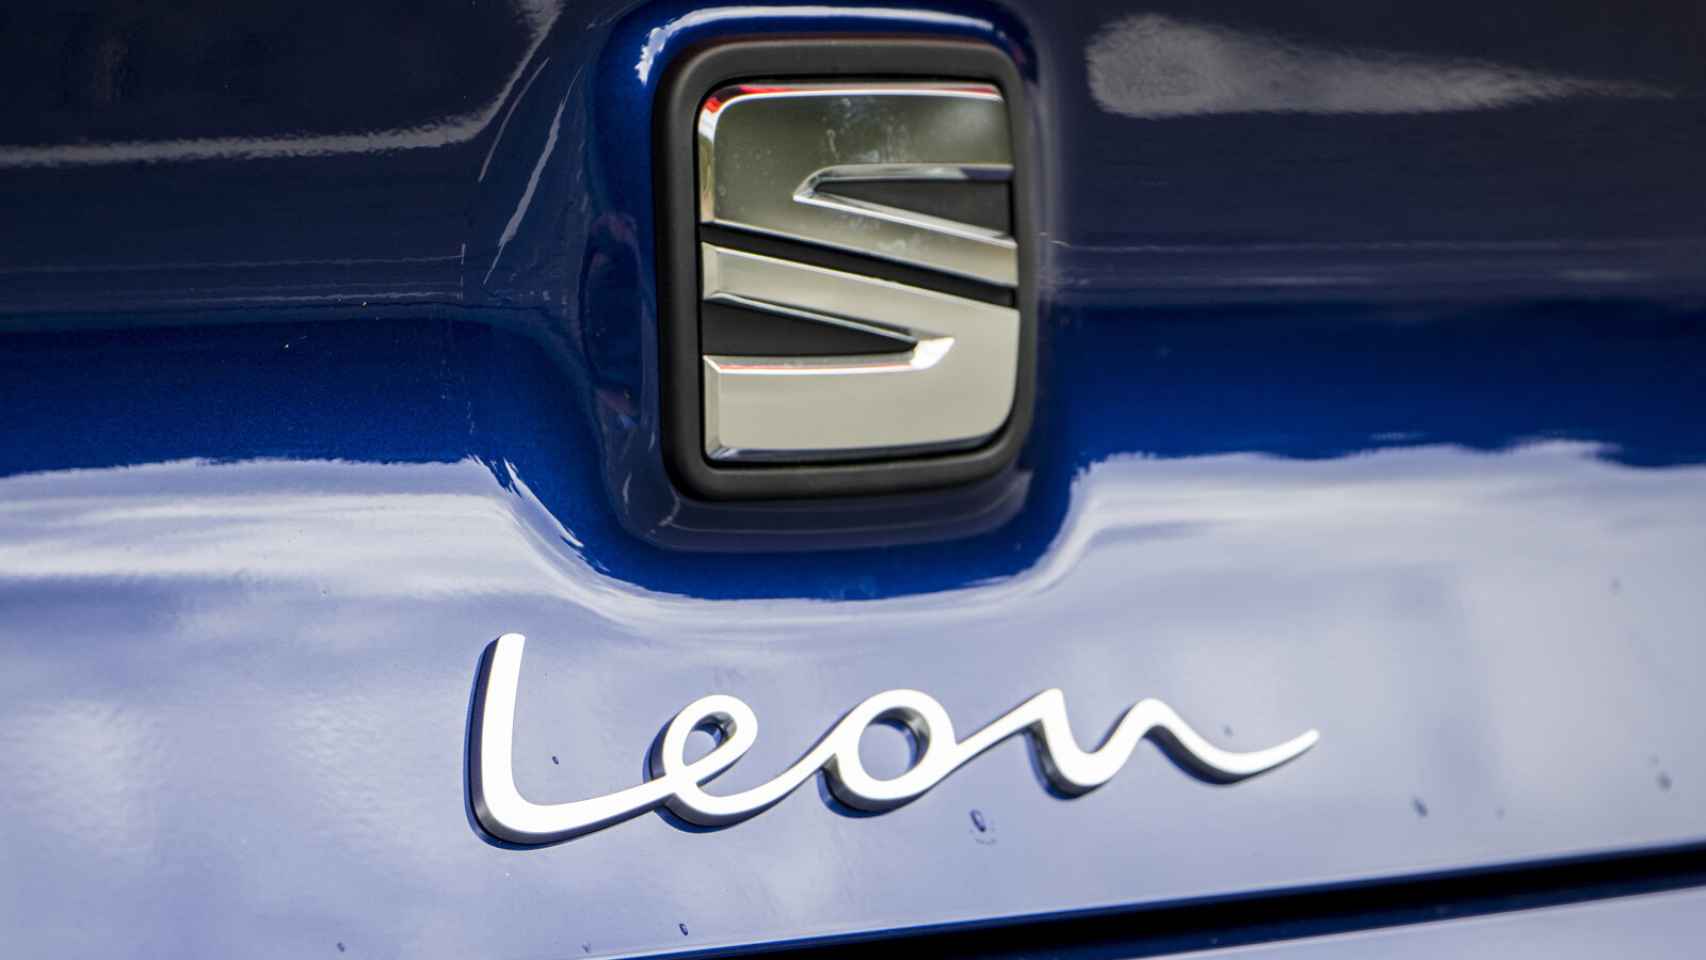 Detalle del portón del nuevo Seat León.